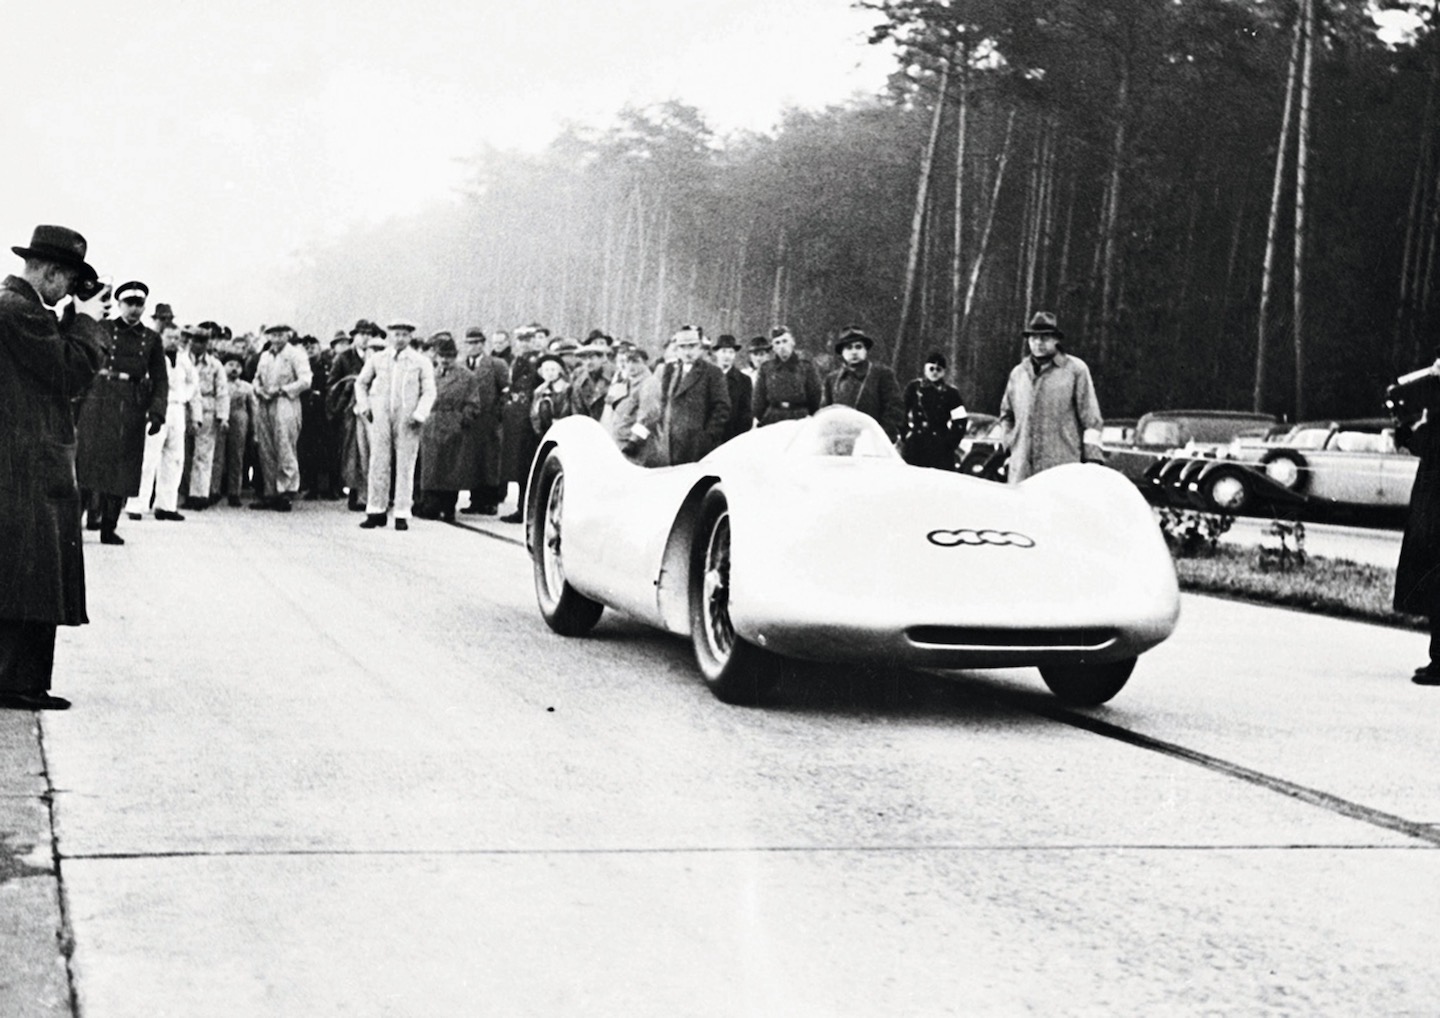 Auto Union Grand Prix: Bernd Rosemayer beim Start zu einer Rekordfahrt bei Frankfurt 1937